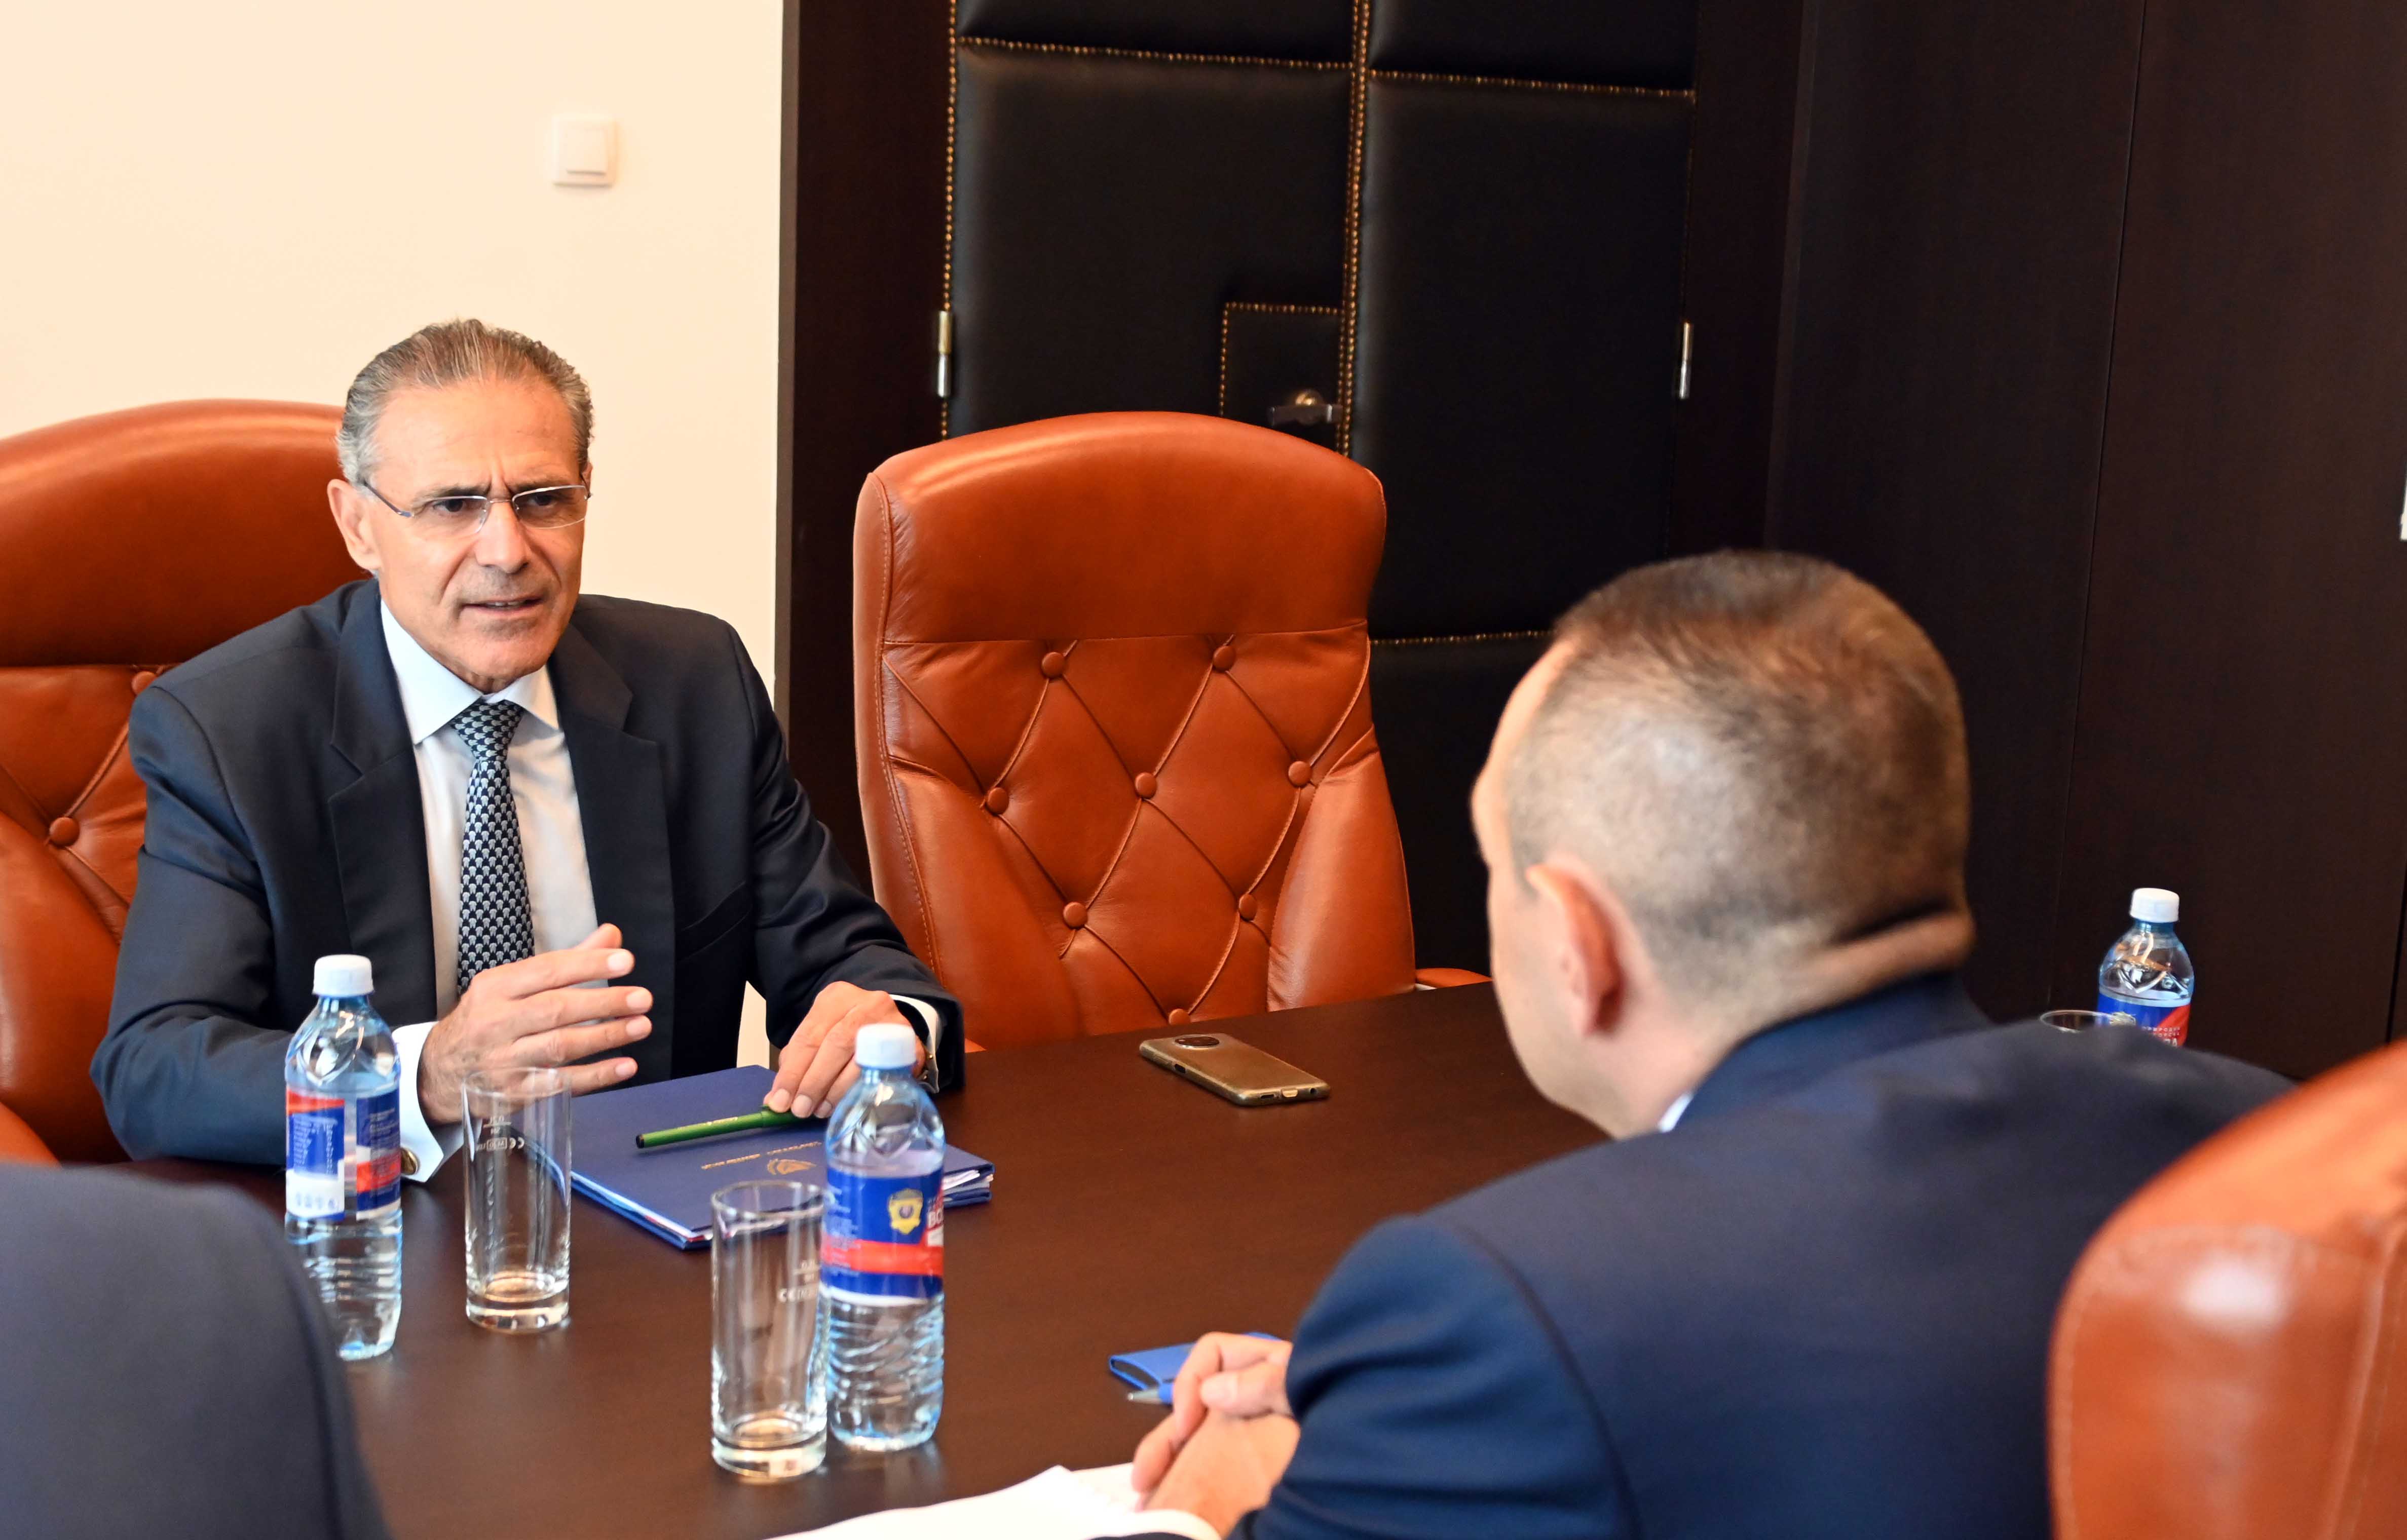 Министар Александар Вулин састао се са амбасадором Републике Kипар Димитриосом Теофилактуом